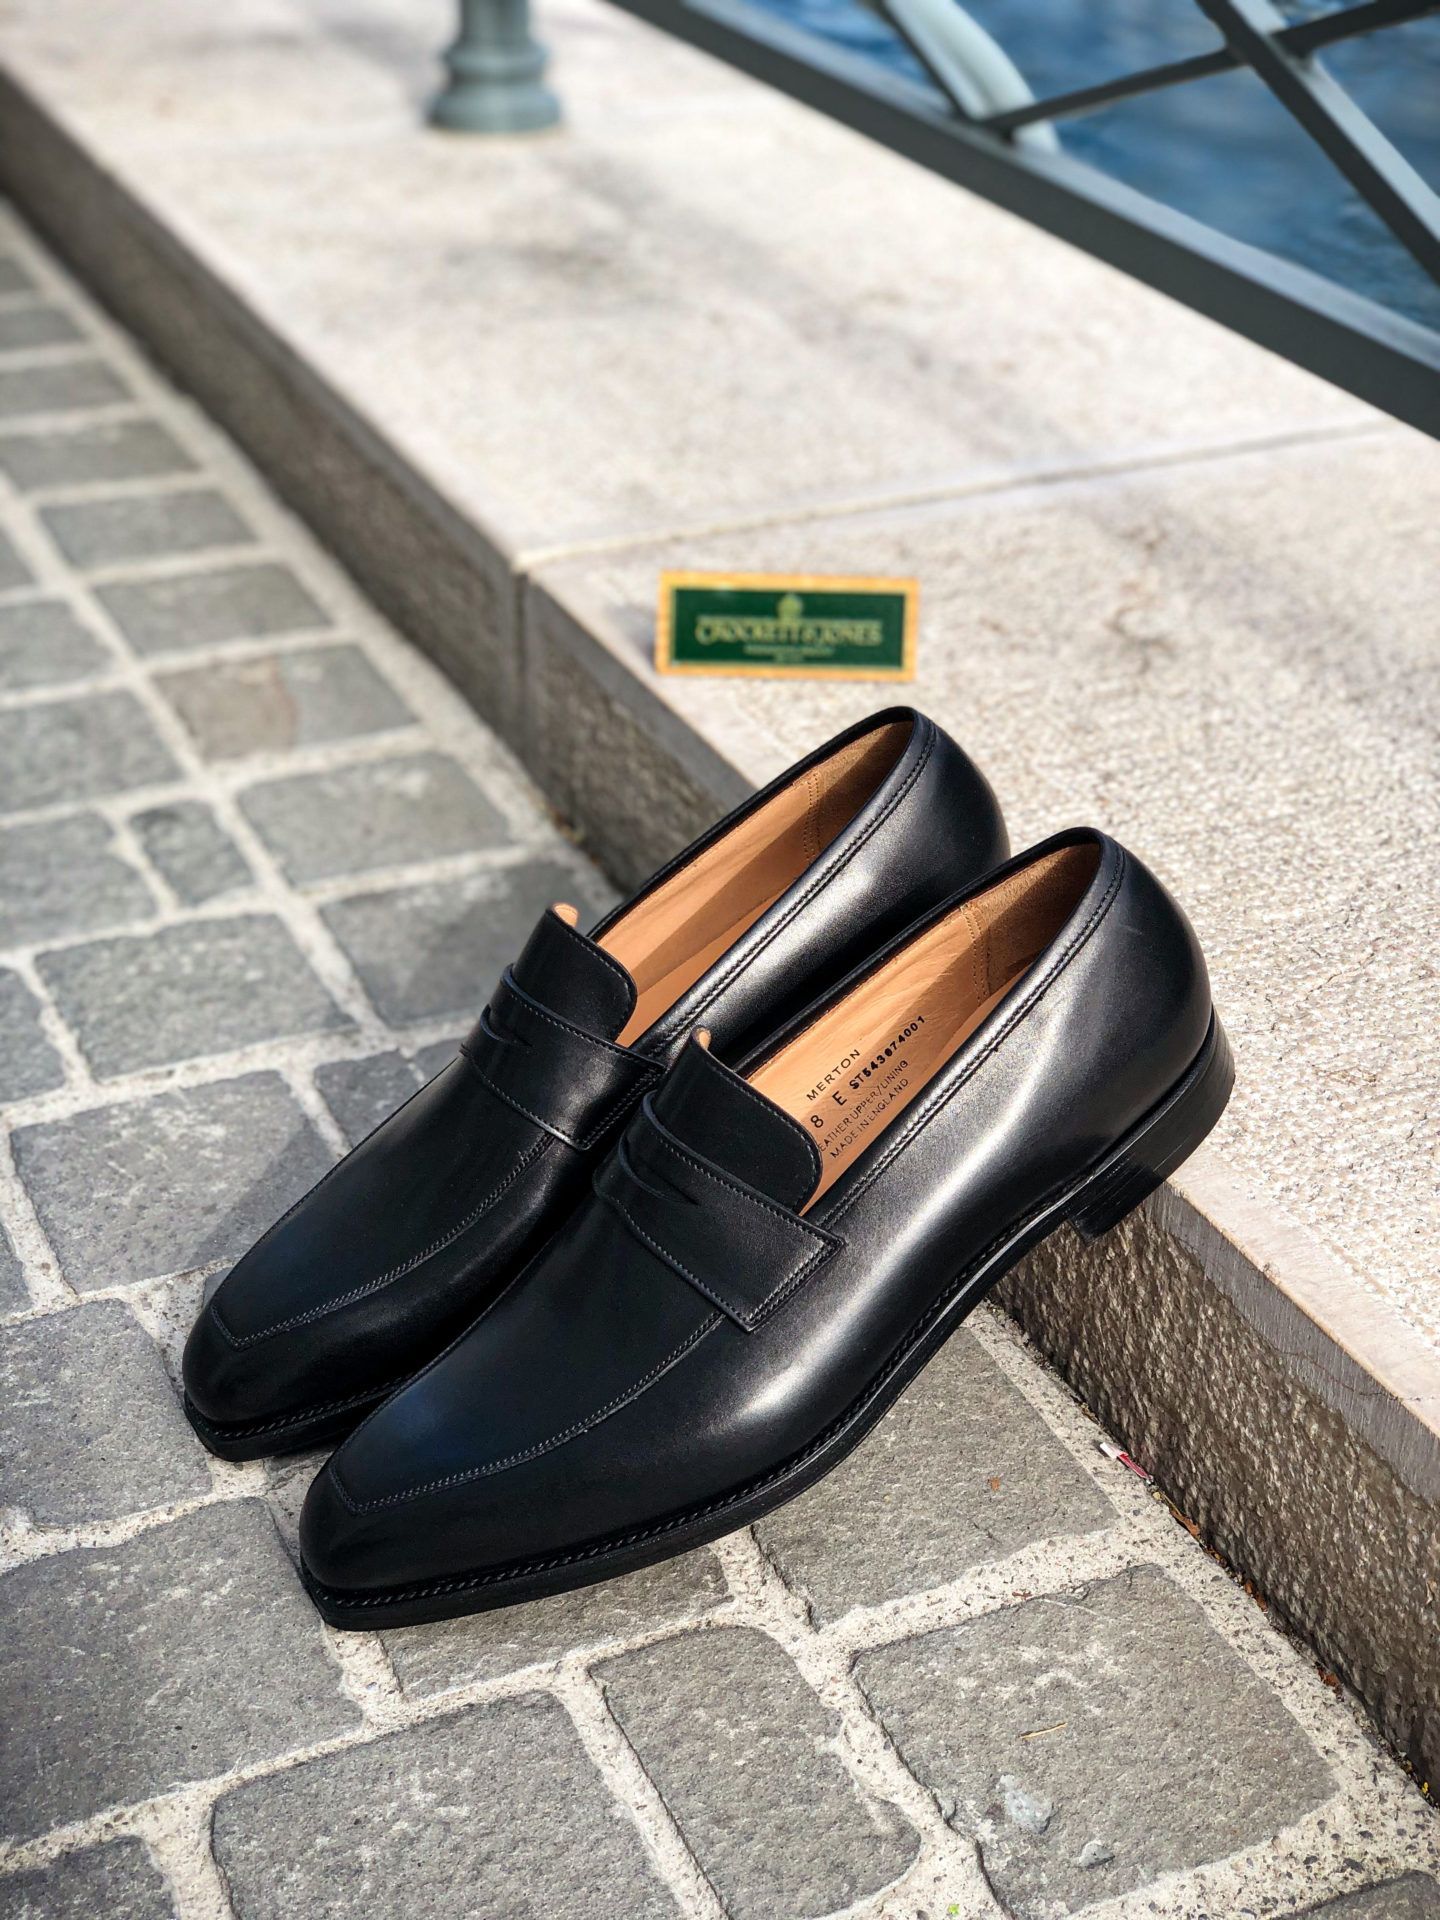 CROCKETT & JONES MERTON • Luxury Shoes in Geneva | Brogue